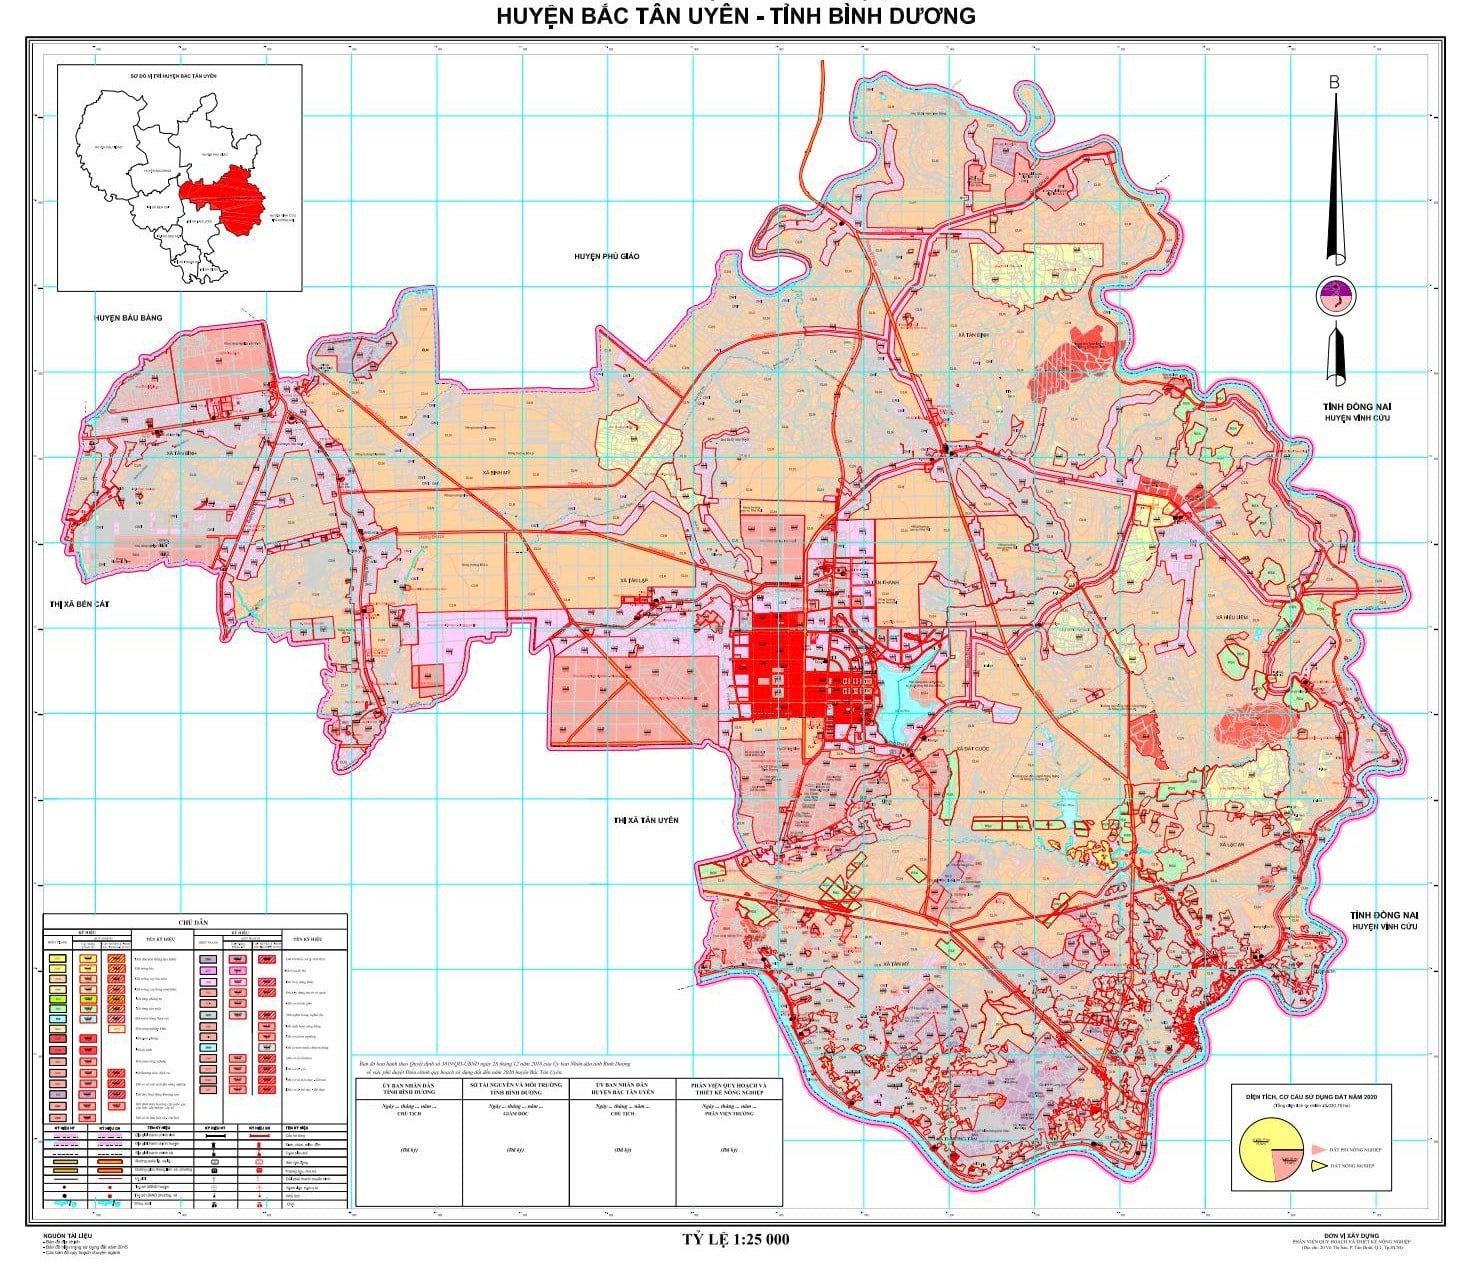 Bản đồ quy hoạch Bắc Tân Uyên có những khu công nghiệp nào?